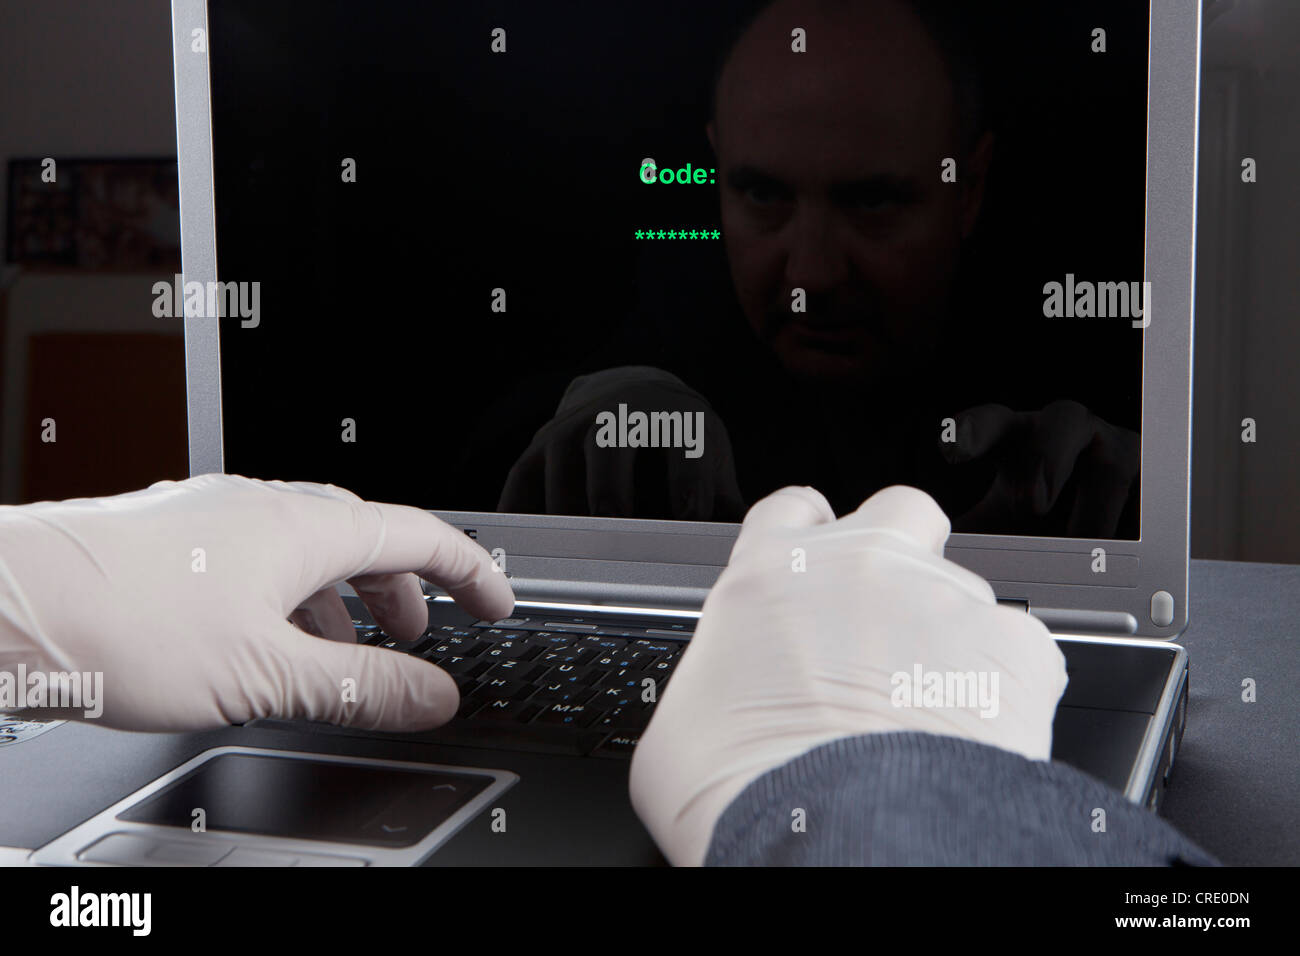 Hacker mit einem Laptop mit Latex Handschuhen um hinterlassen keine Spuren, symbolisches Bild für Internet-Kriminalität Stockfoto